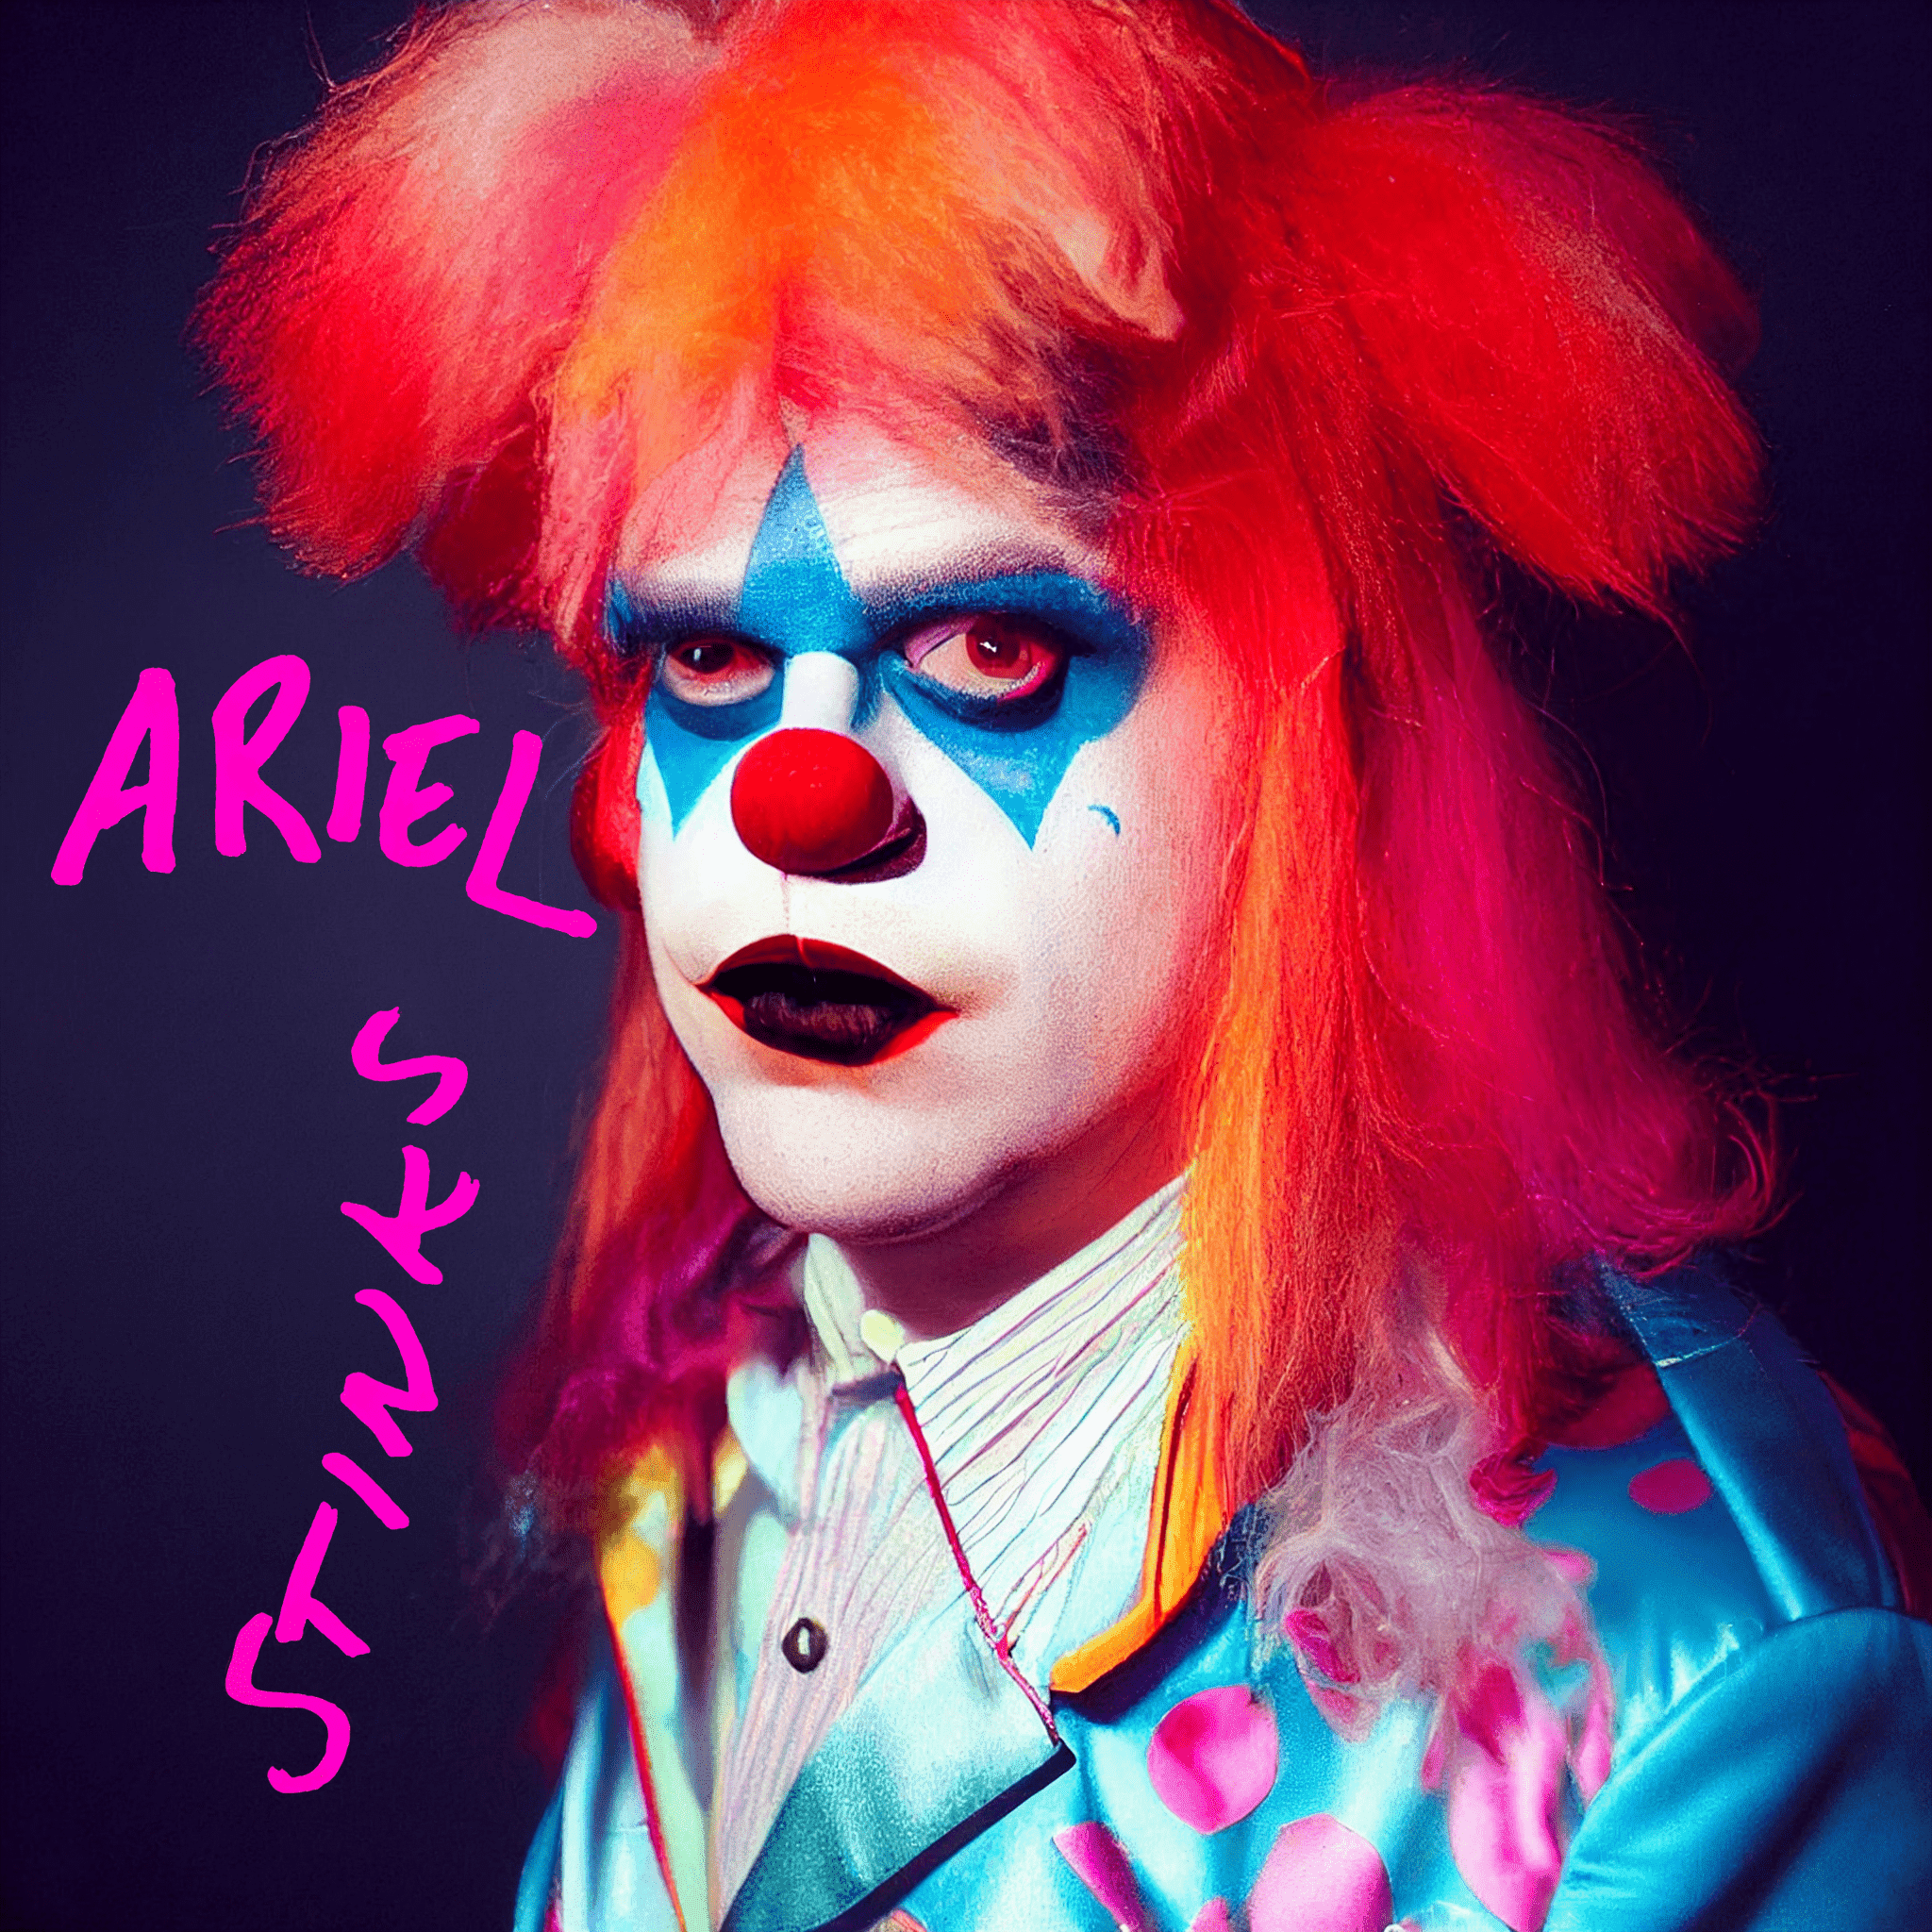 Ariel the Sad Clown